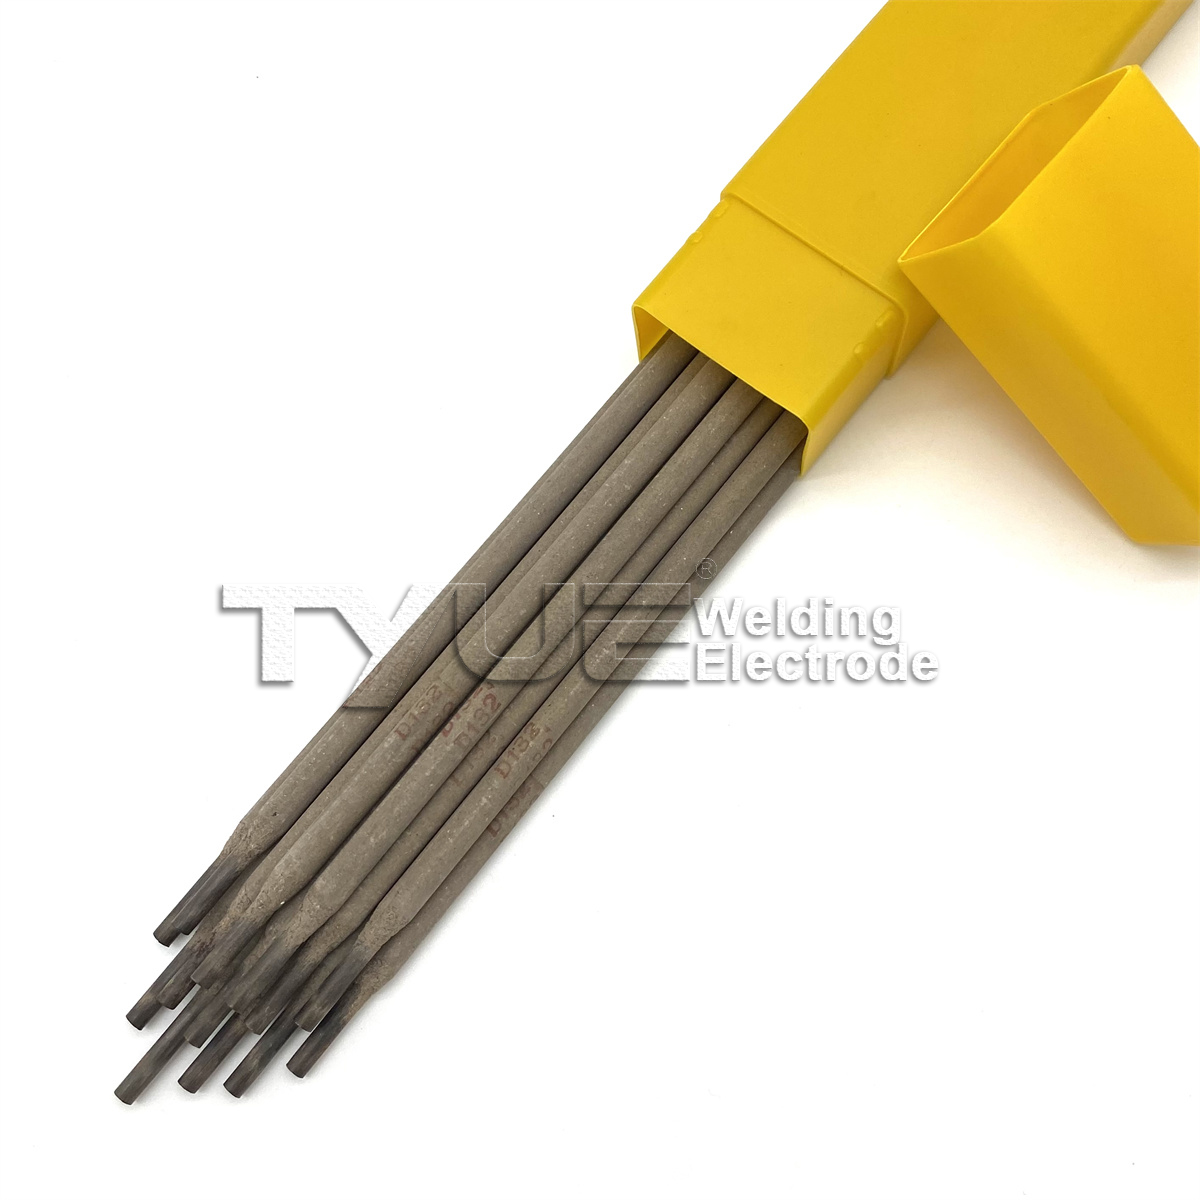 D132 (B-83) Hardfacing Welding Electrode, Surfacing Welding Rod, Arc Welding Stick